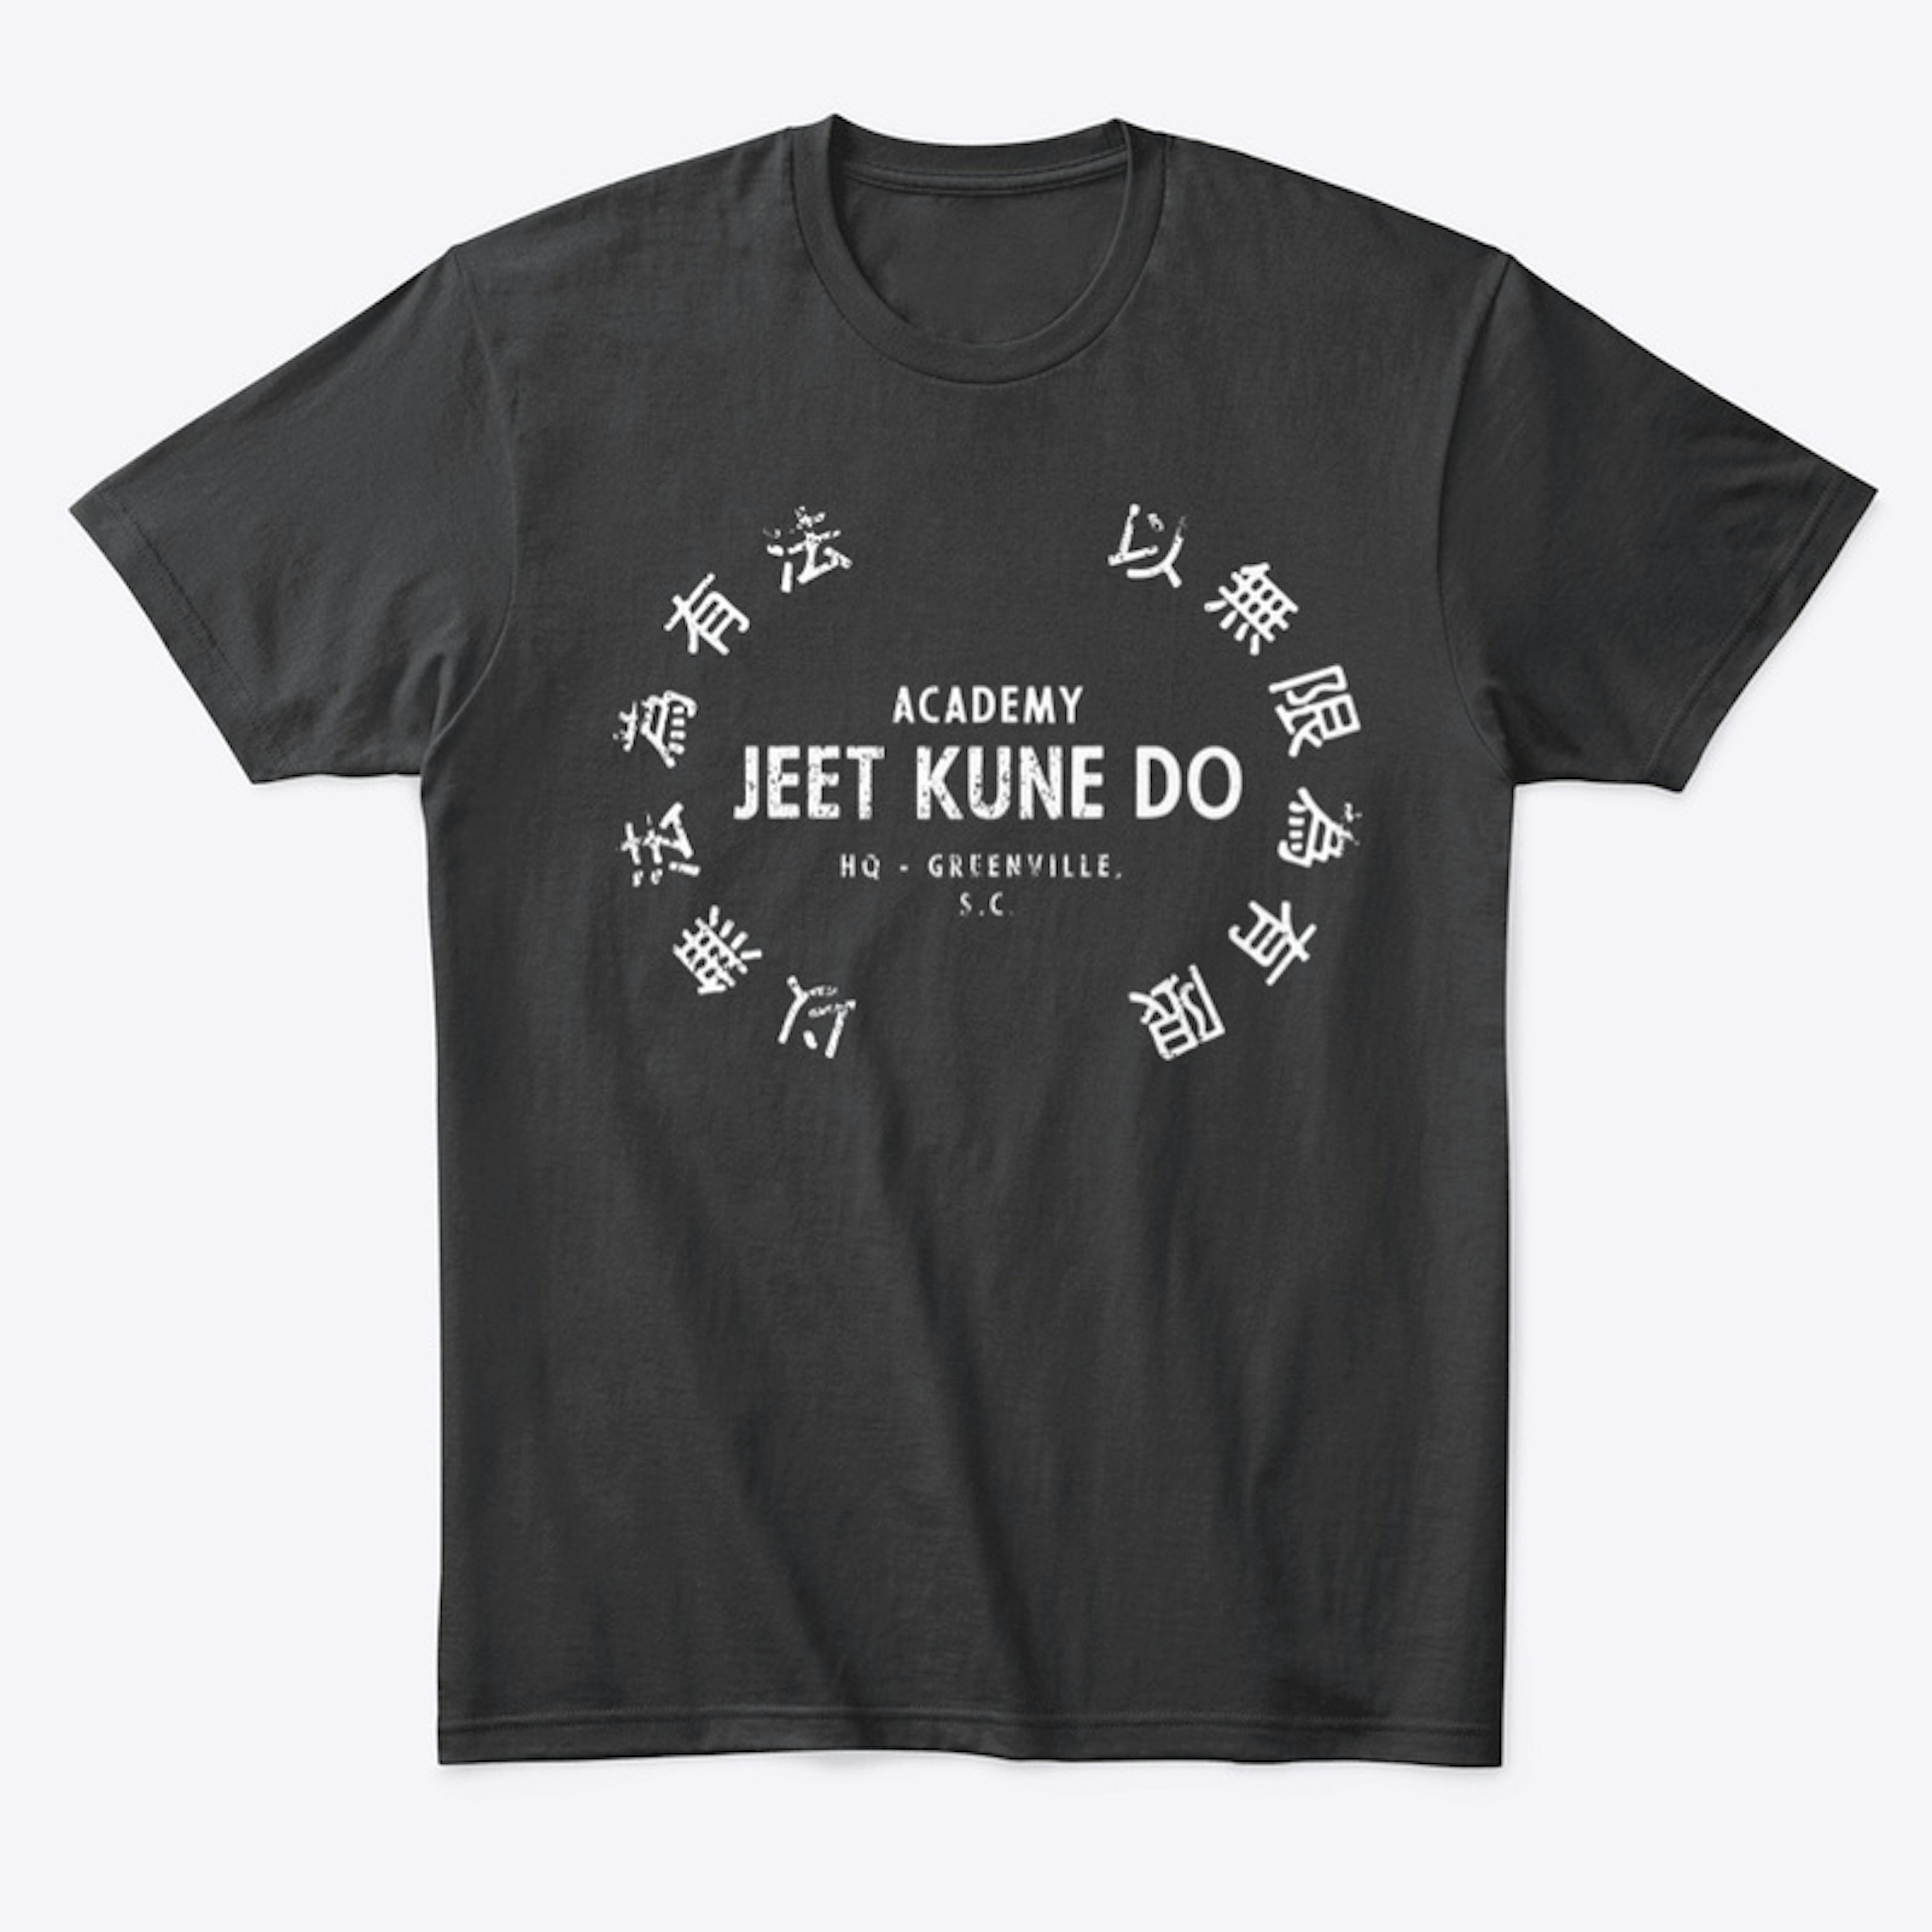 Academy Jeet Kune Do Shirt